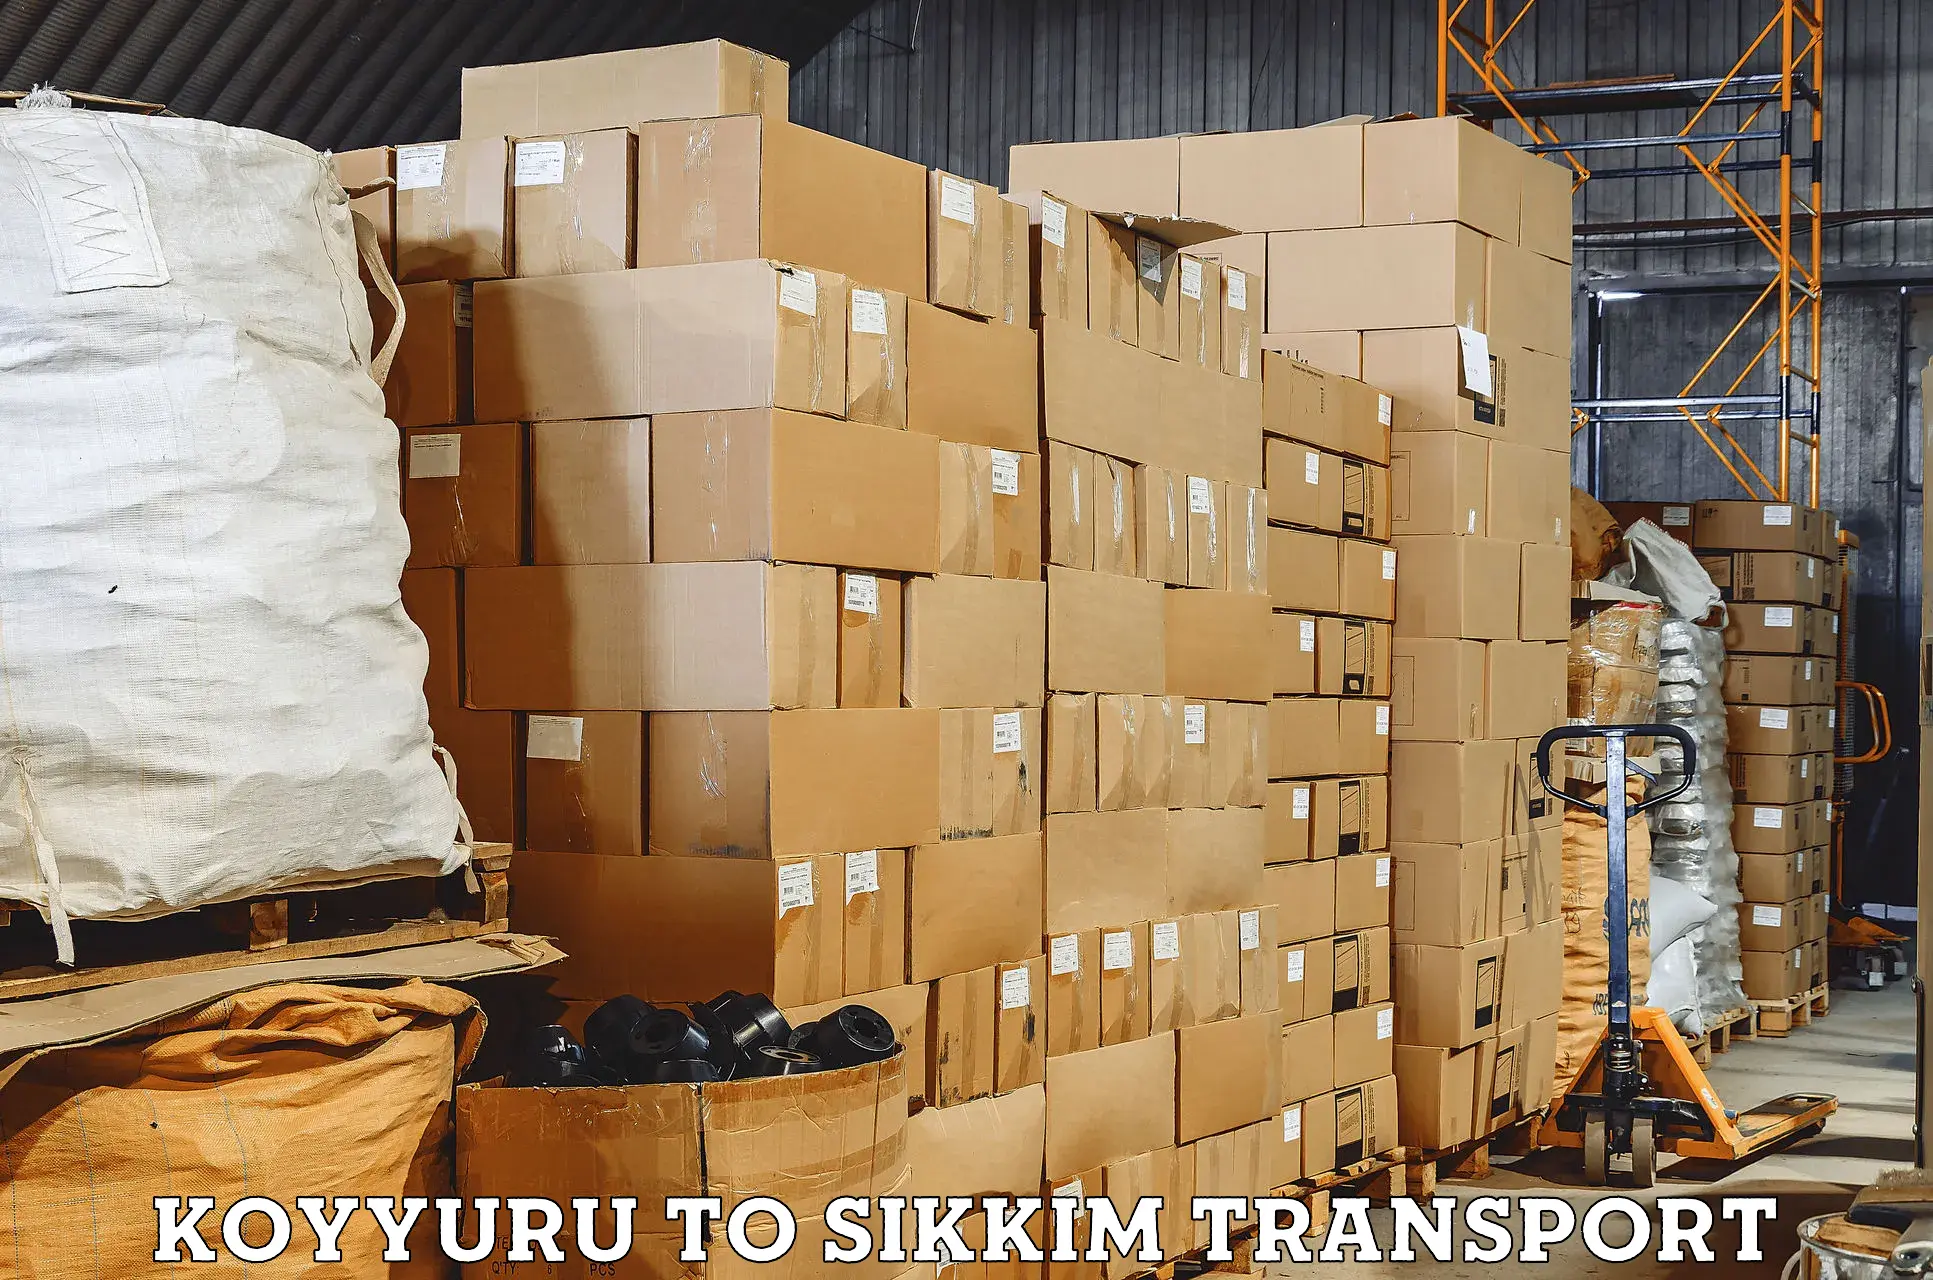 Pick up transport service Koyyuru to South Sikkim